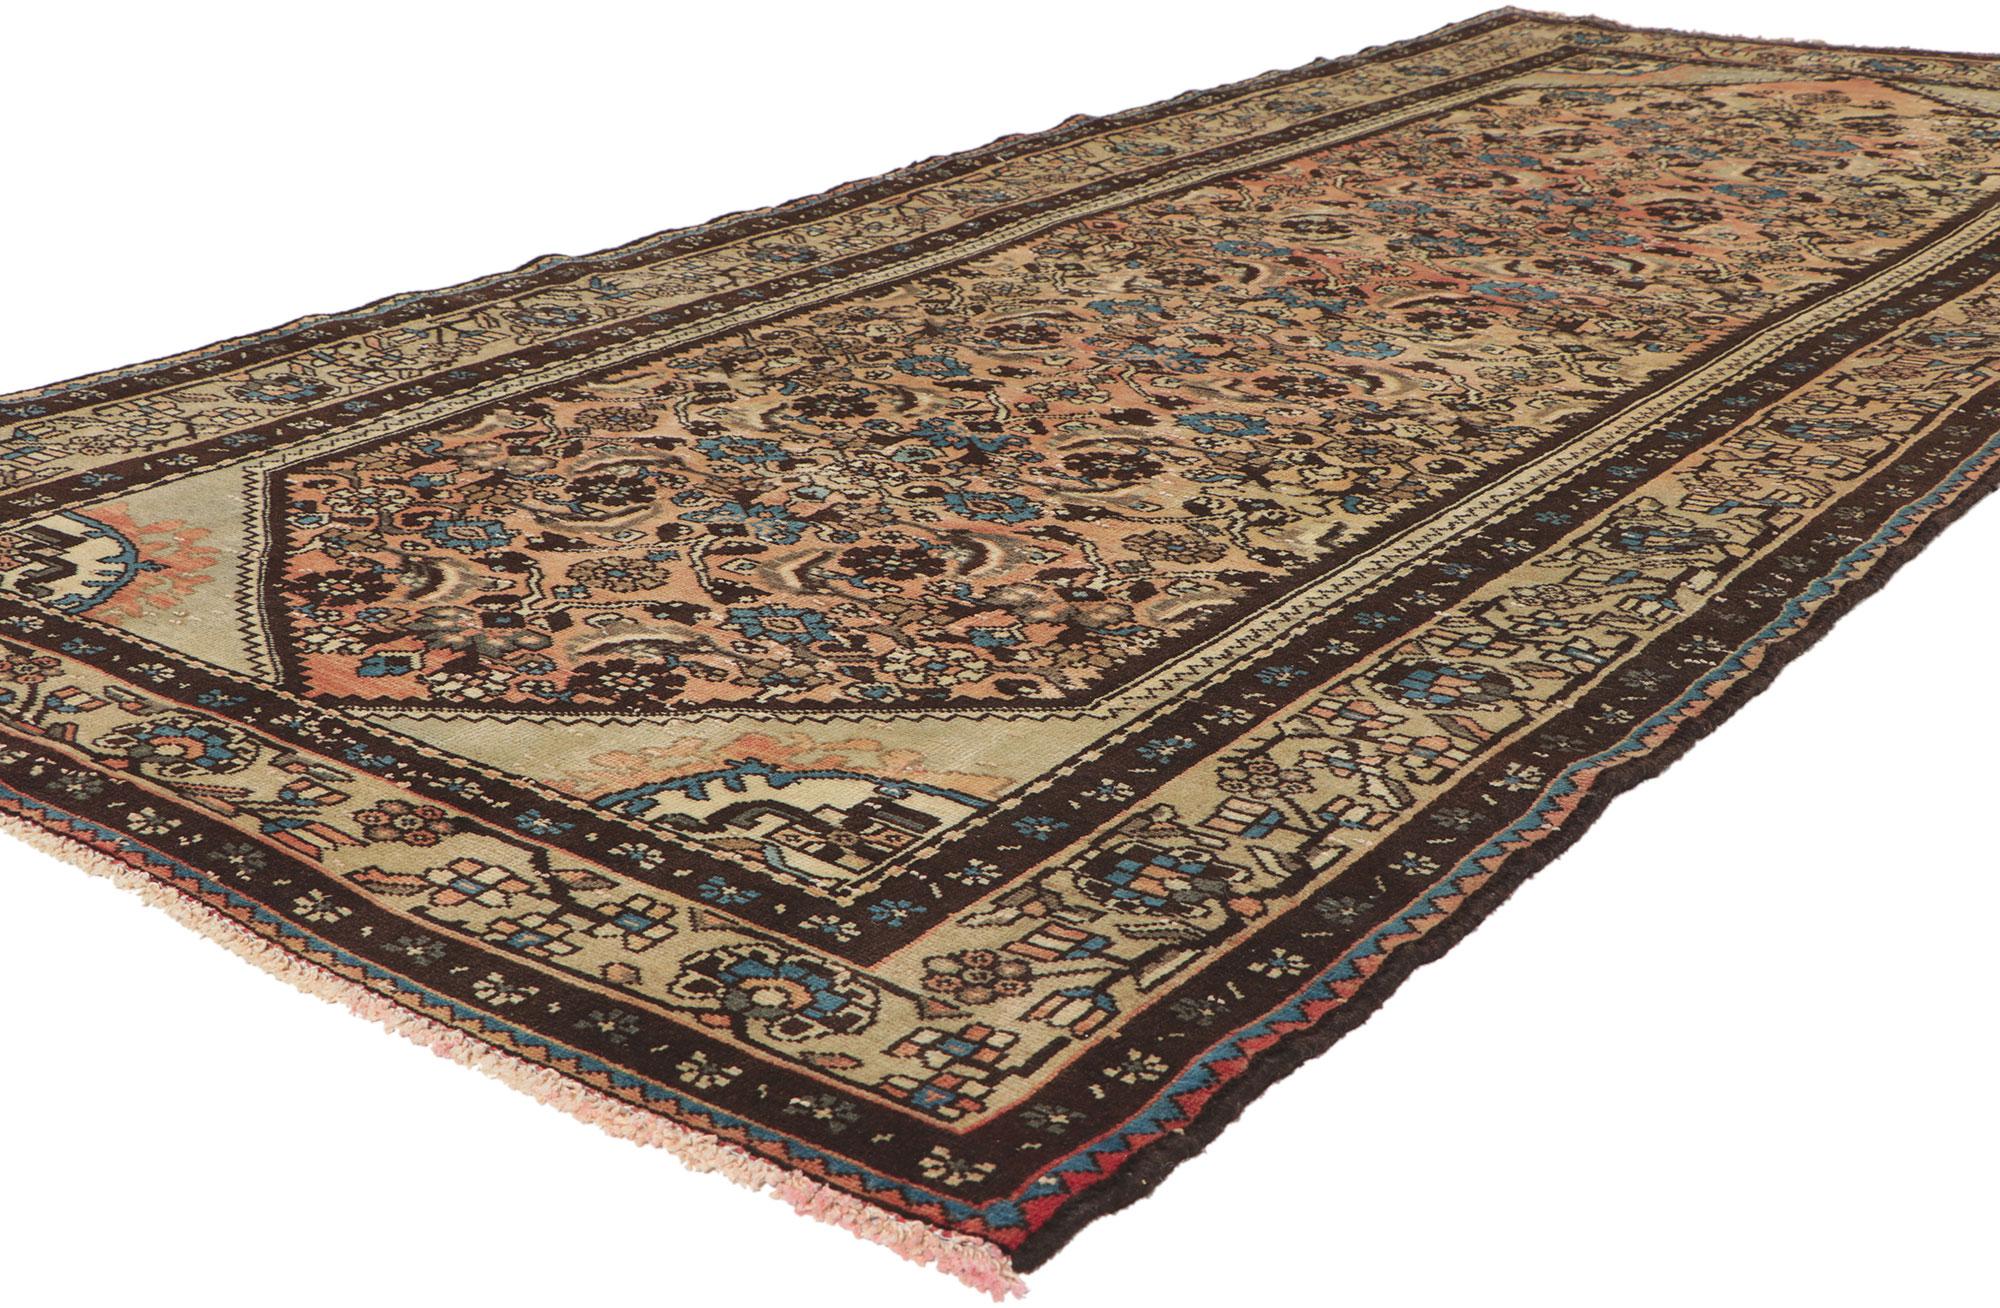 61153 Vintage Persian Hamadan Rug, 04'05 x 10'00.
Dieser handgeknüpfte persische Hamadan-Teppich aus Wolle im Vintage-Stil besticht durch seine mühelose Schönheit und sein zeitloses Design. Das auffällige Herati-Muster und die raffinierte